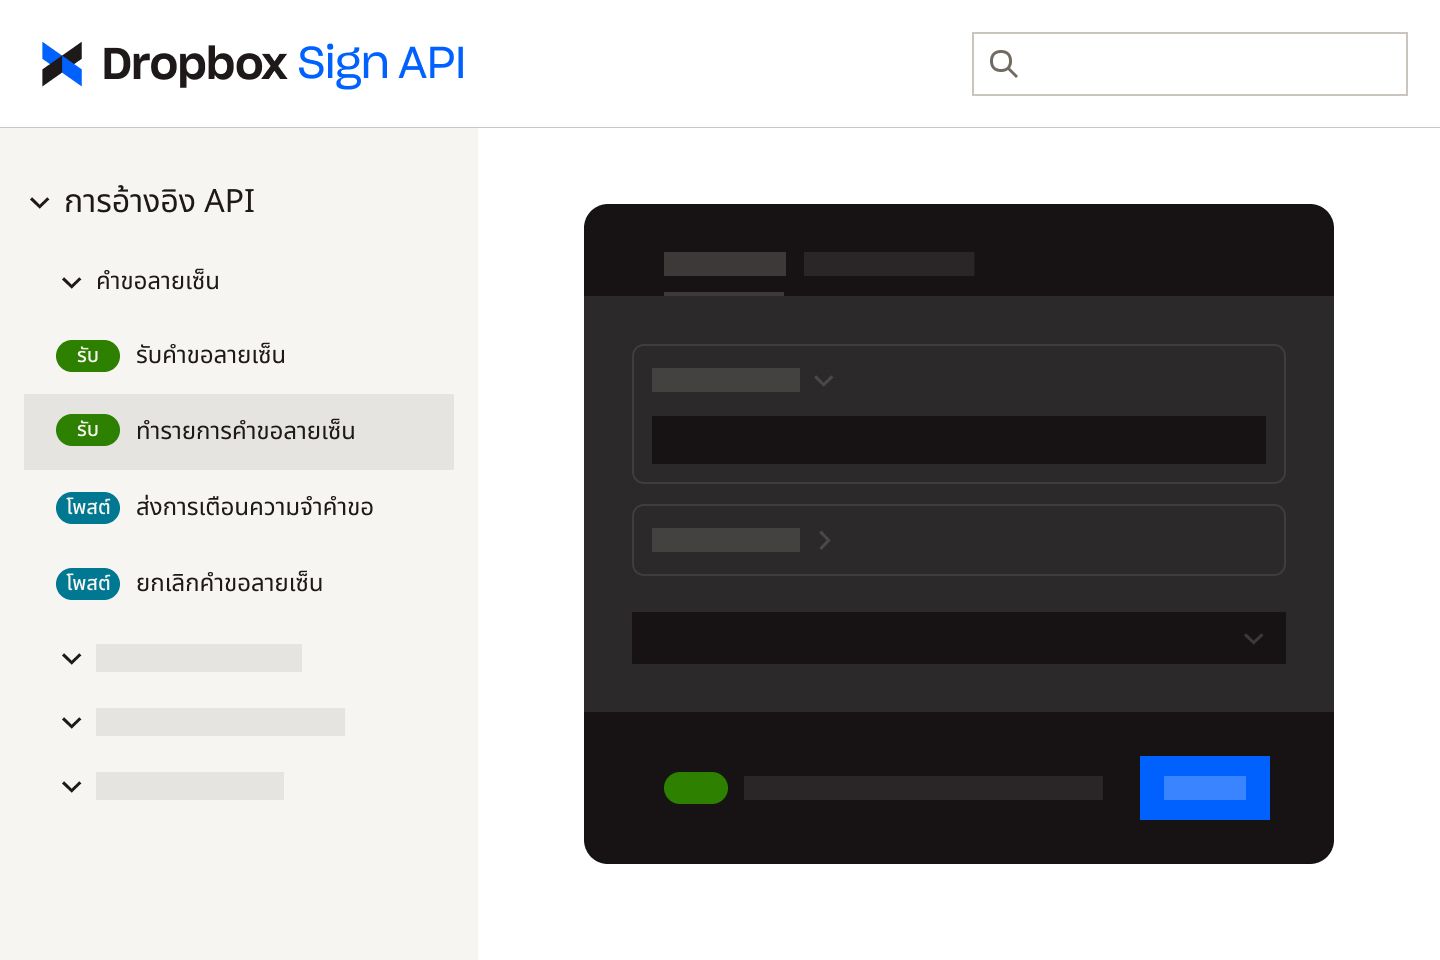 อินเตอร์เฟส API ลายเซ็นอิเล็กทรอนิกส์ของ Dropbox Sign